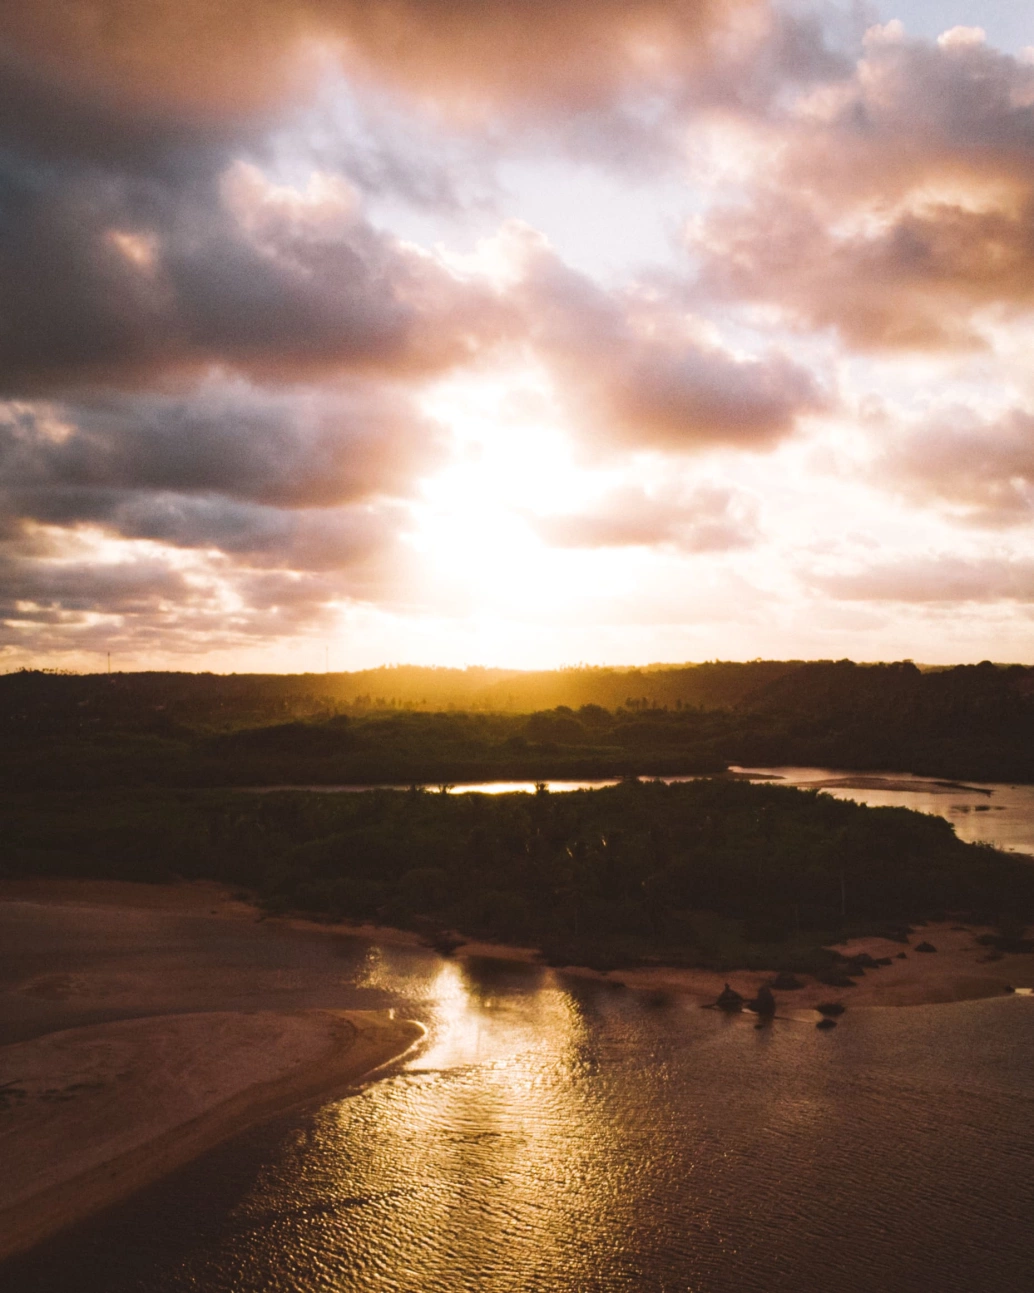 Vista do rio Tatuamunha no município de São Miguel dos Milagres, Alagoas, ao pôr do sol.